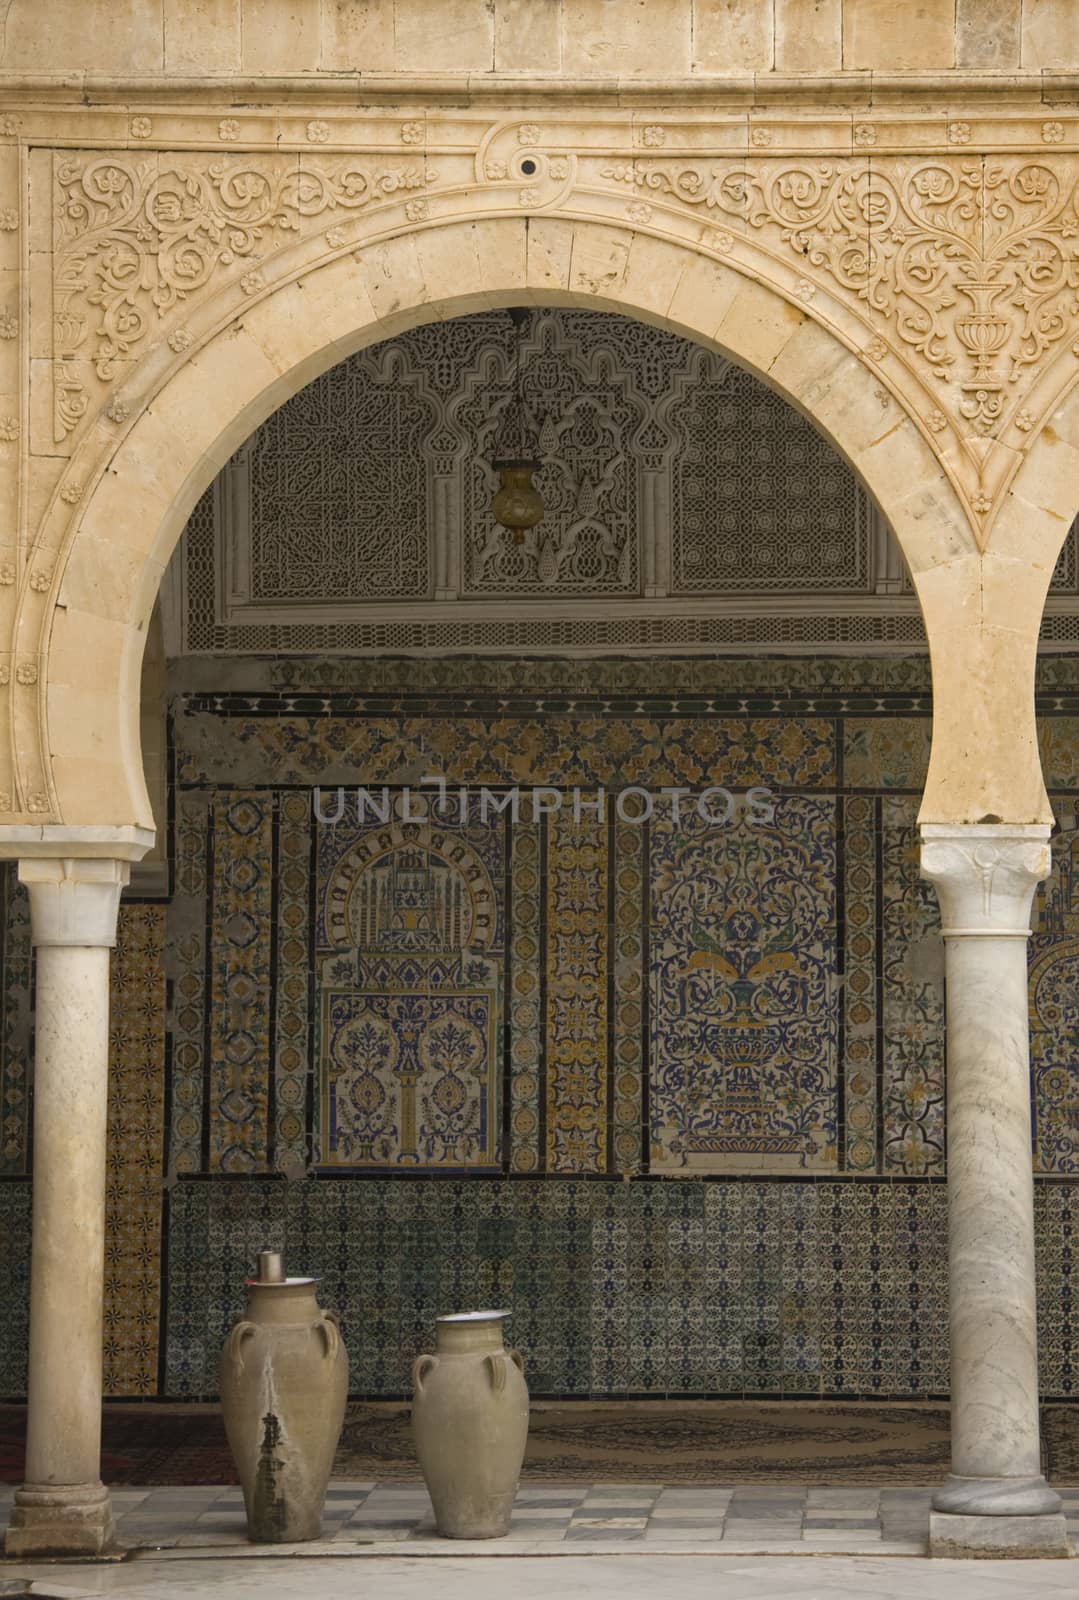 Museum of Mosaics in Tunisia